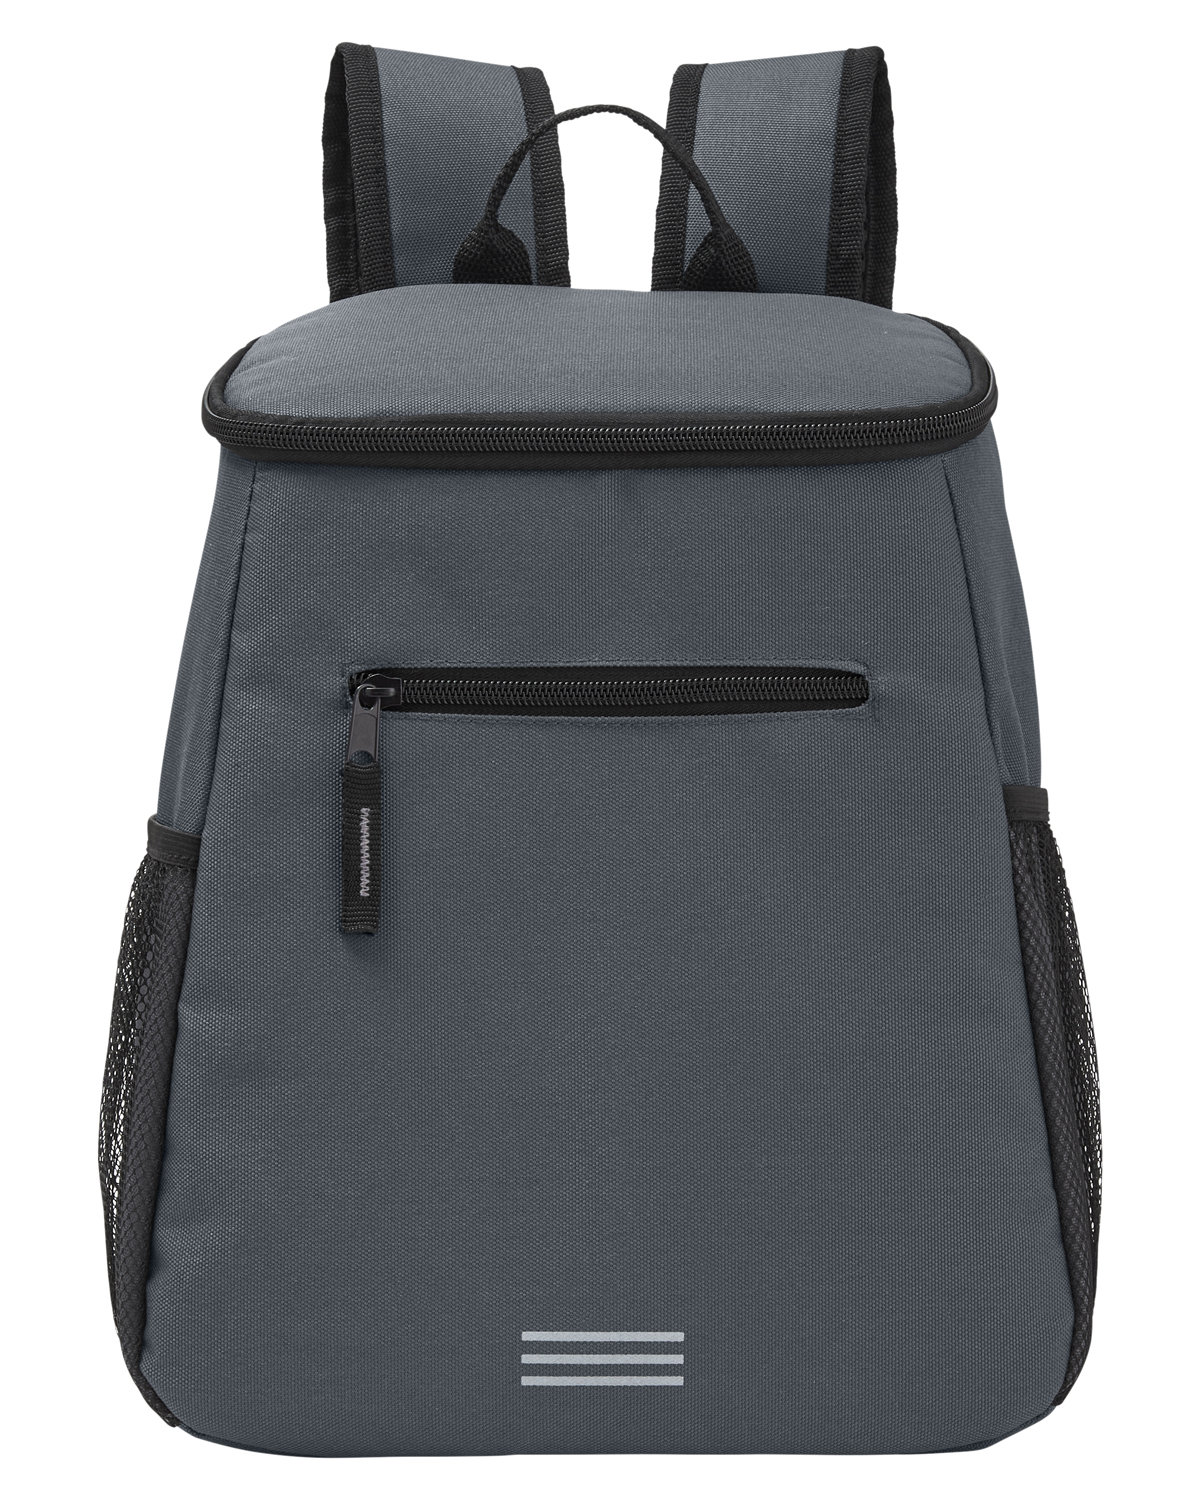 Backpack Cooler-